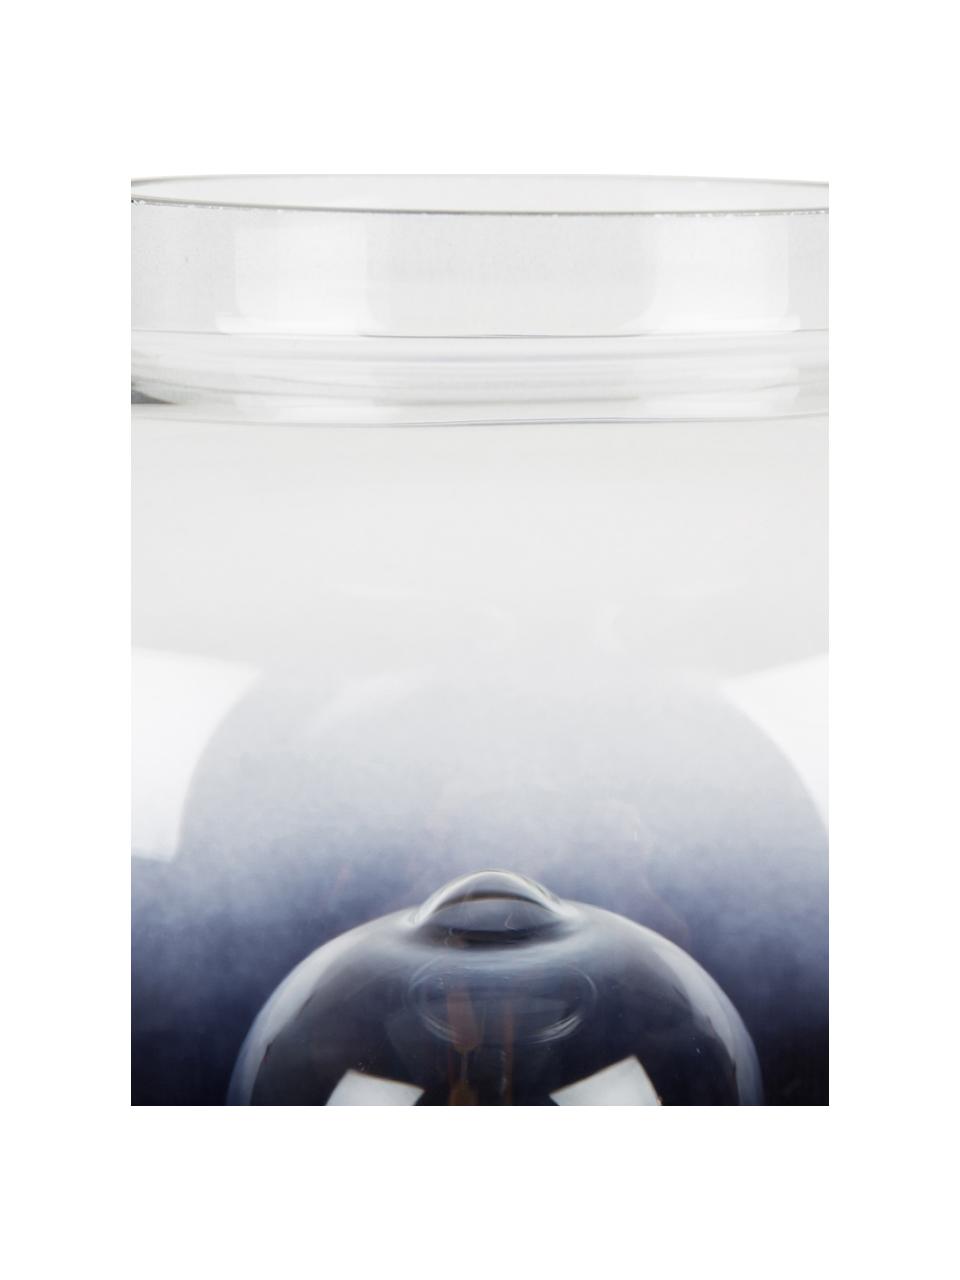 Kleine Dimmbare Nachttischlampe Moody aus Glas, Lampenschirm: Glas, Dekor: Messing, Schwarz, Transparent, Messing, Ø 20 x H 30 cm